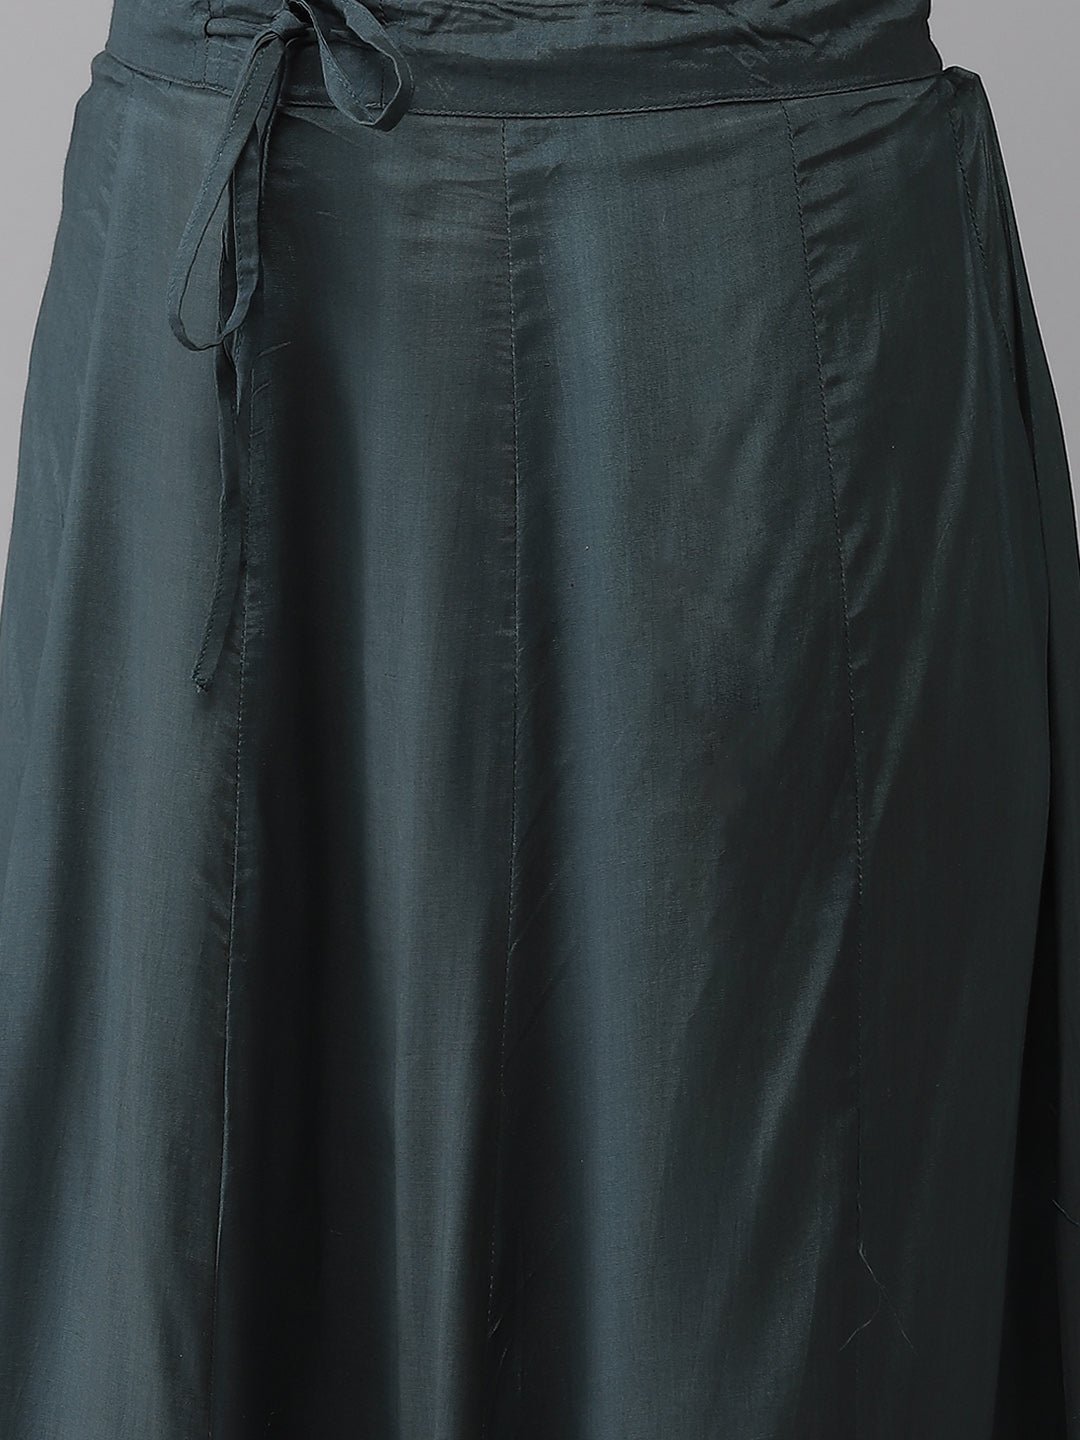 Ishin Women's Silk Blend Teal Embroidered A-Line Kurta Skirt Dupatta Set 